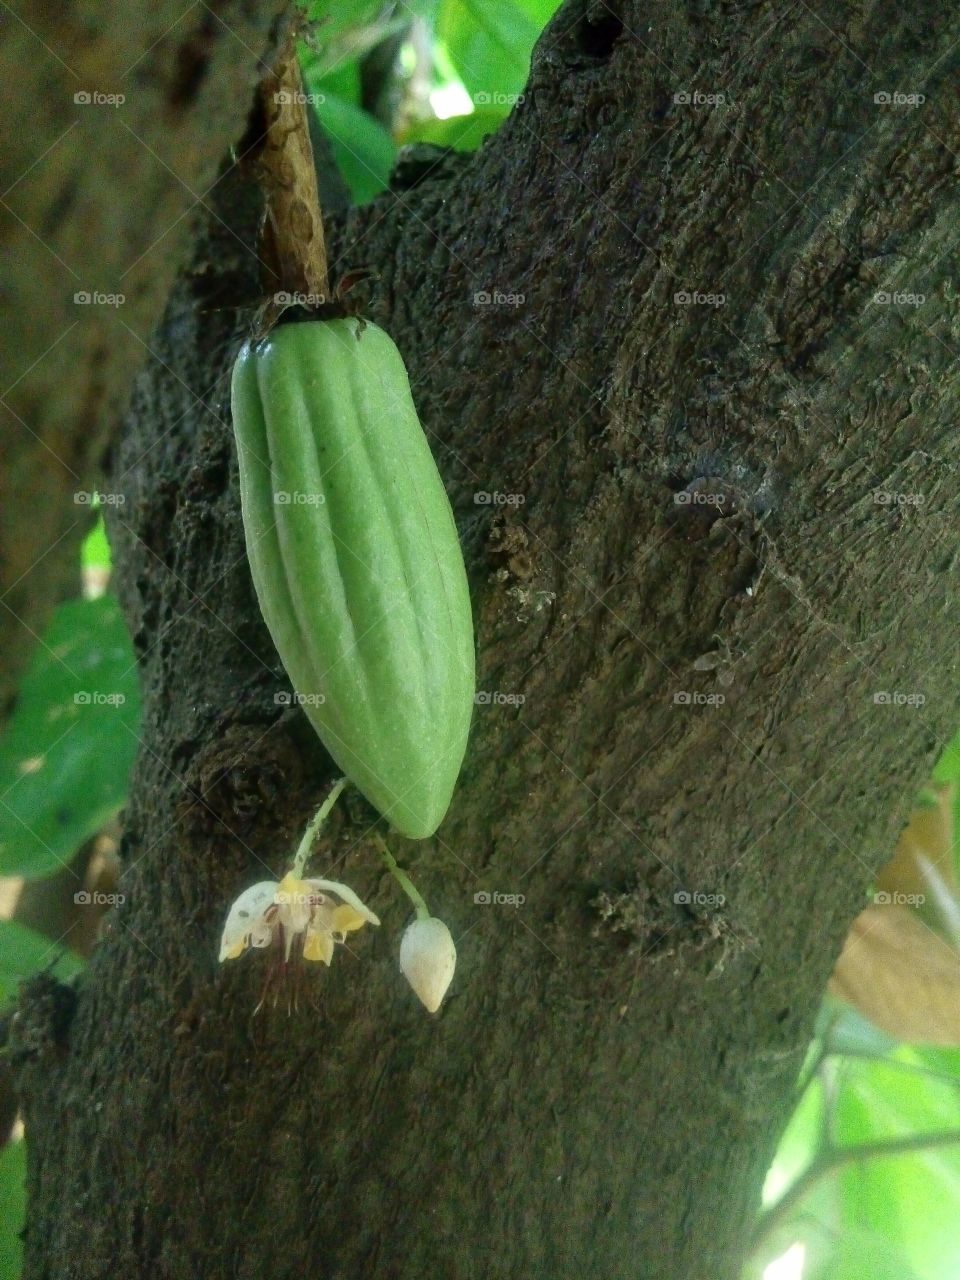 small cocoa